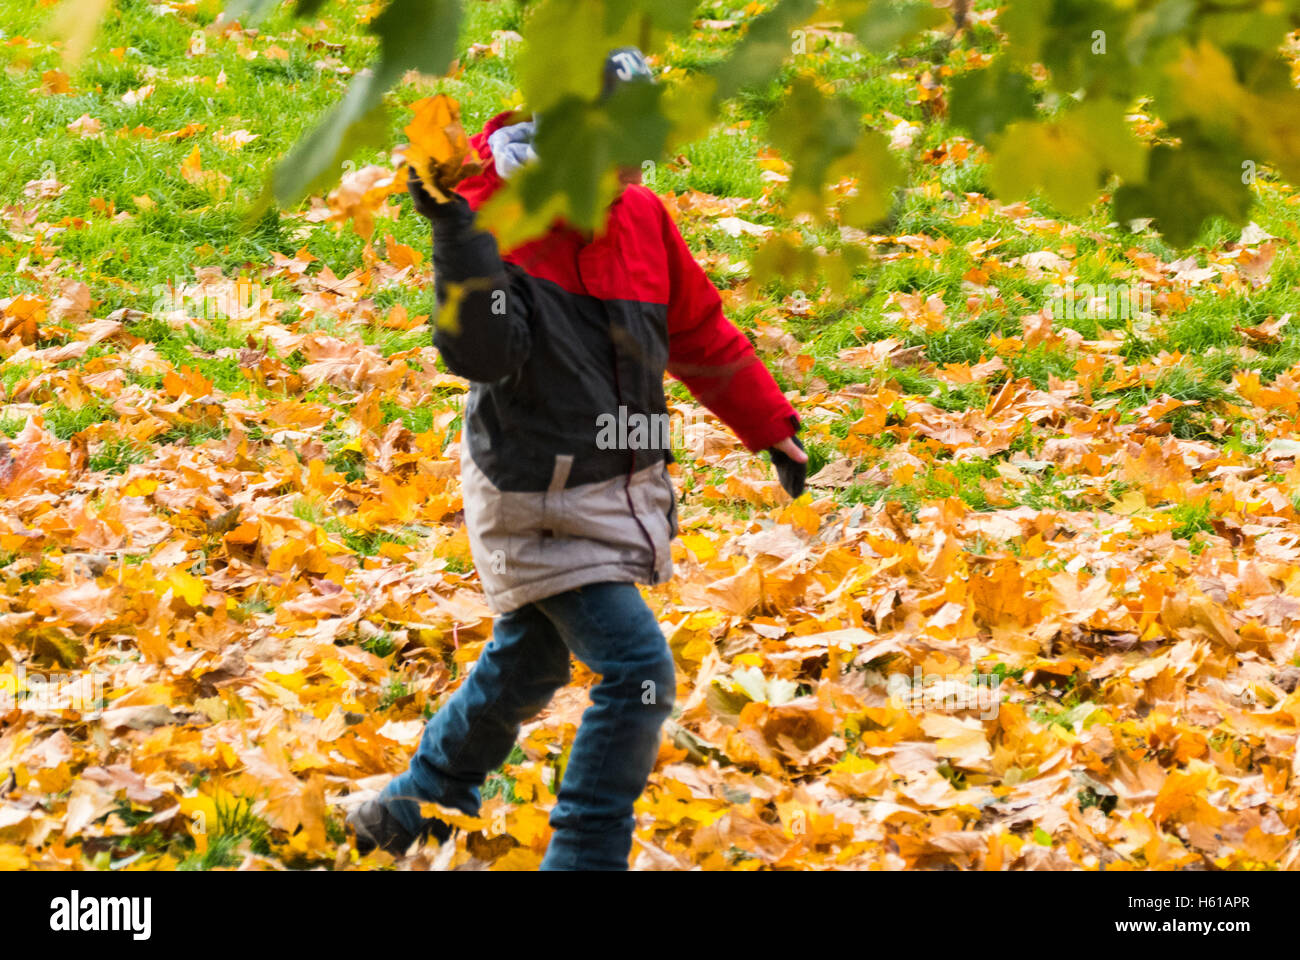 Eine Person spielt Herbst und der junge mit dem Schutz der Bäume Blätter Stockfoto